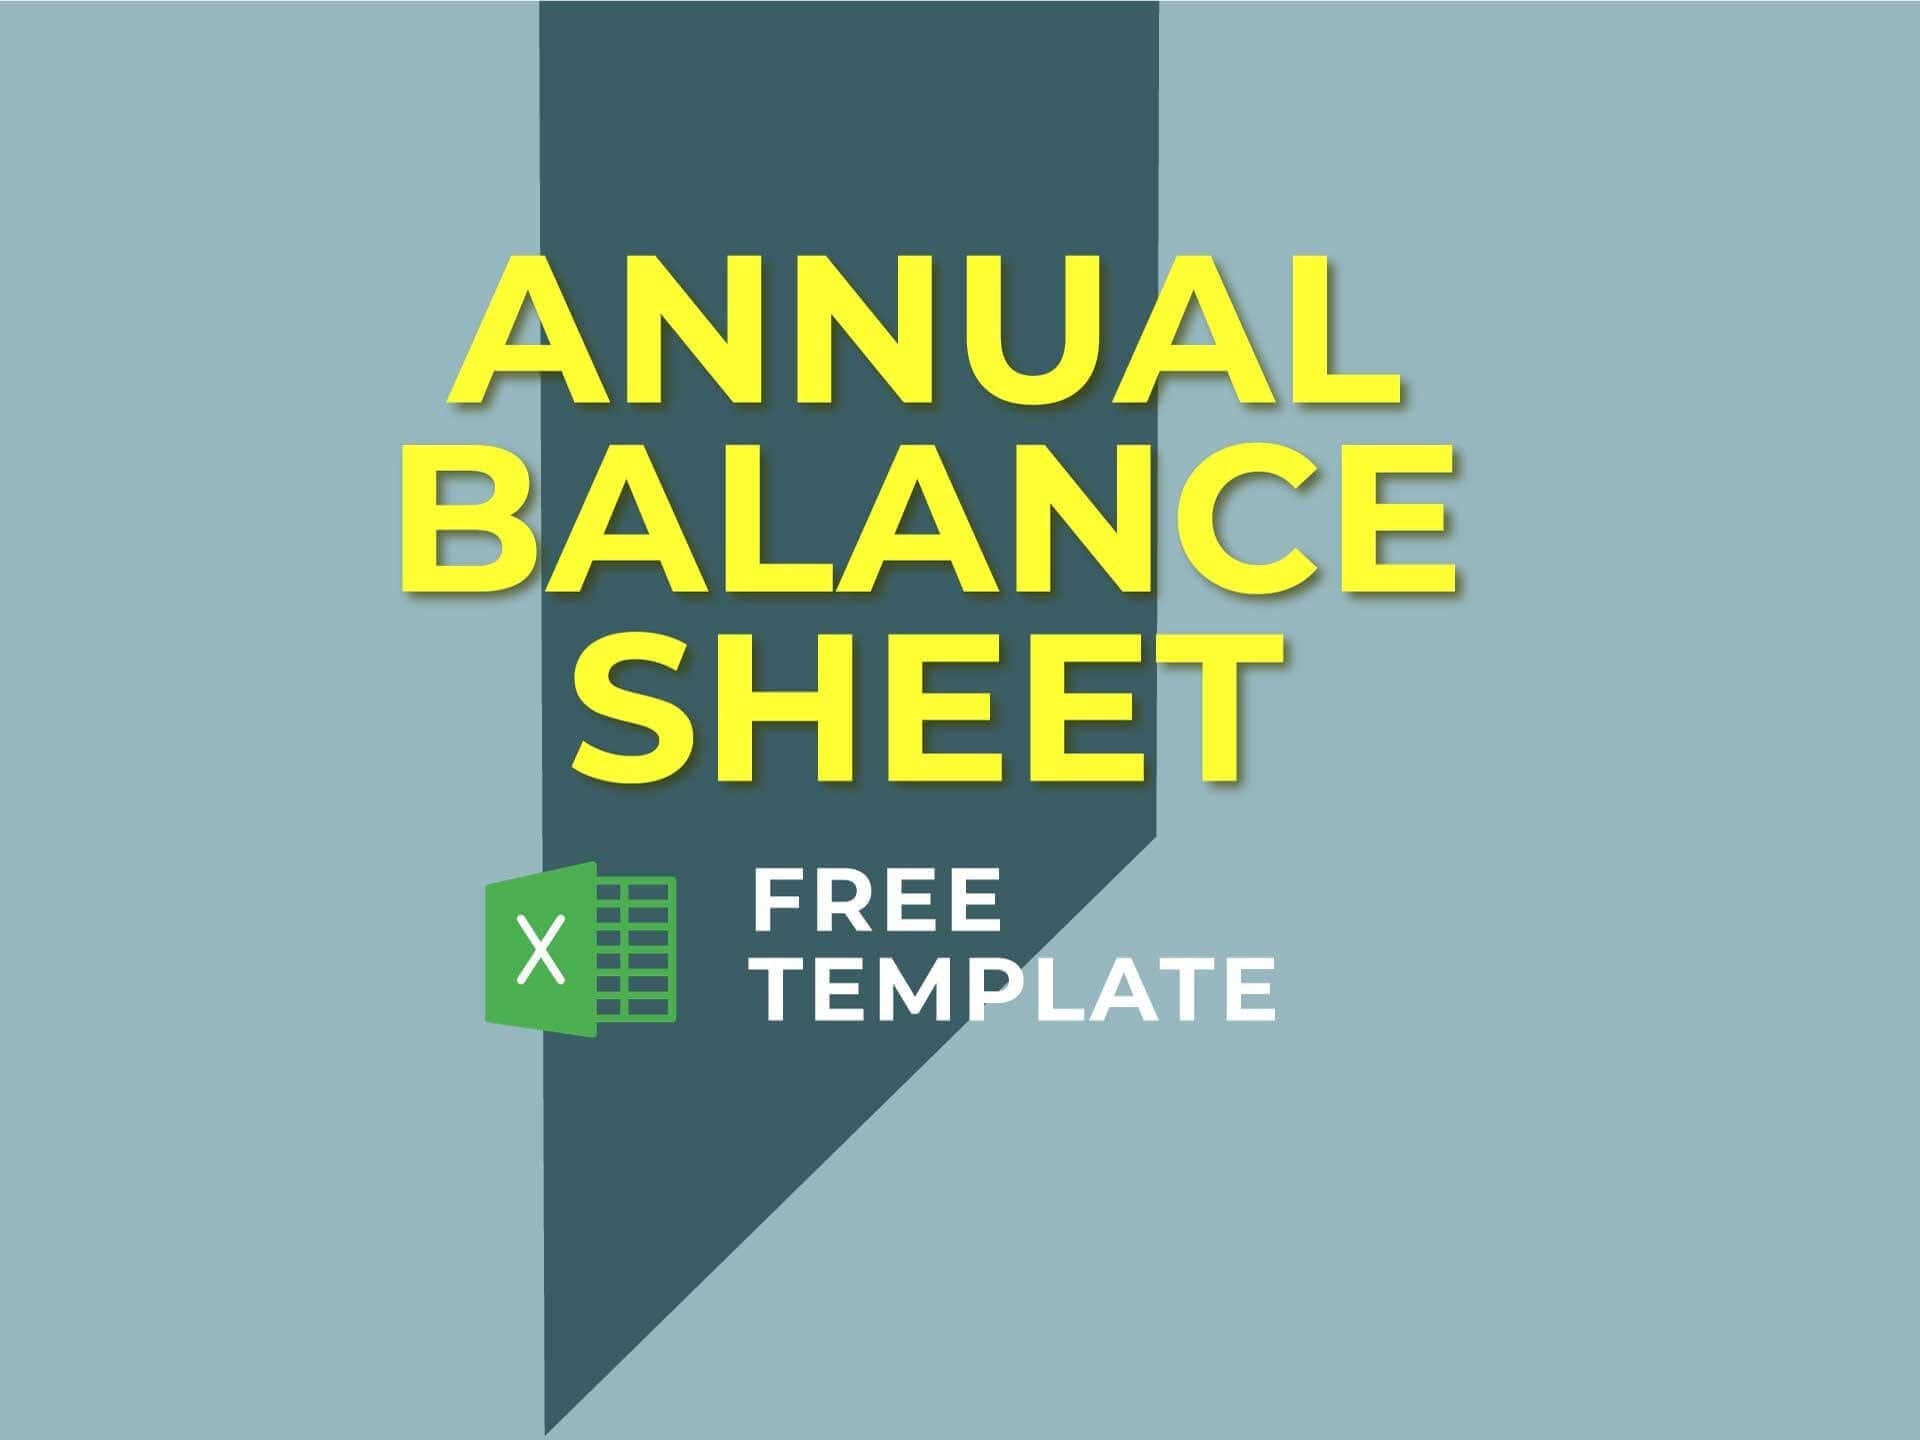 Annual Balance Sheet